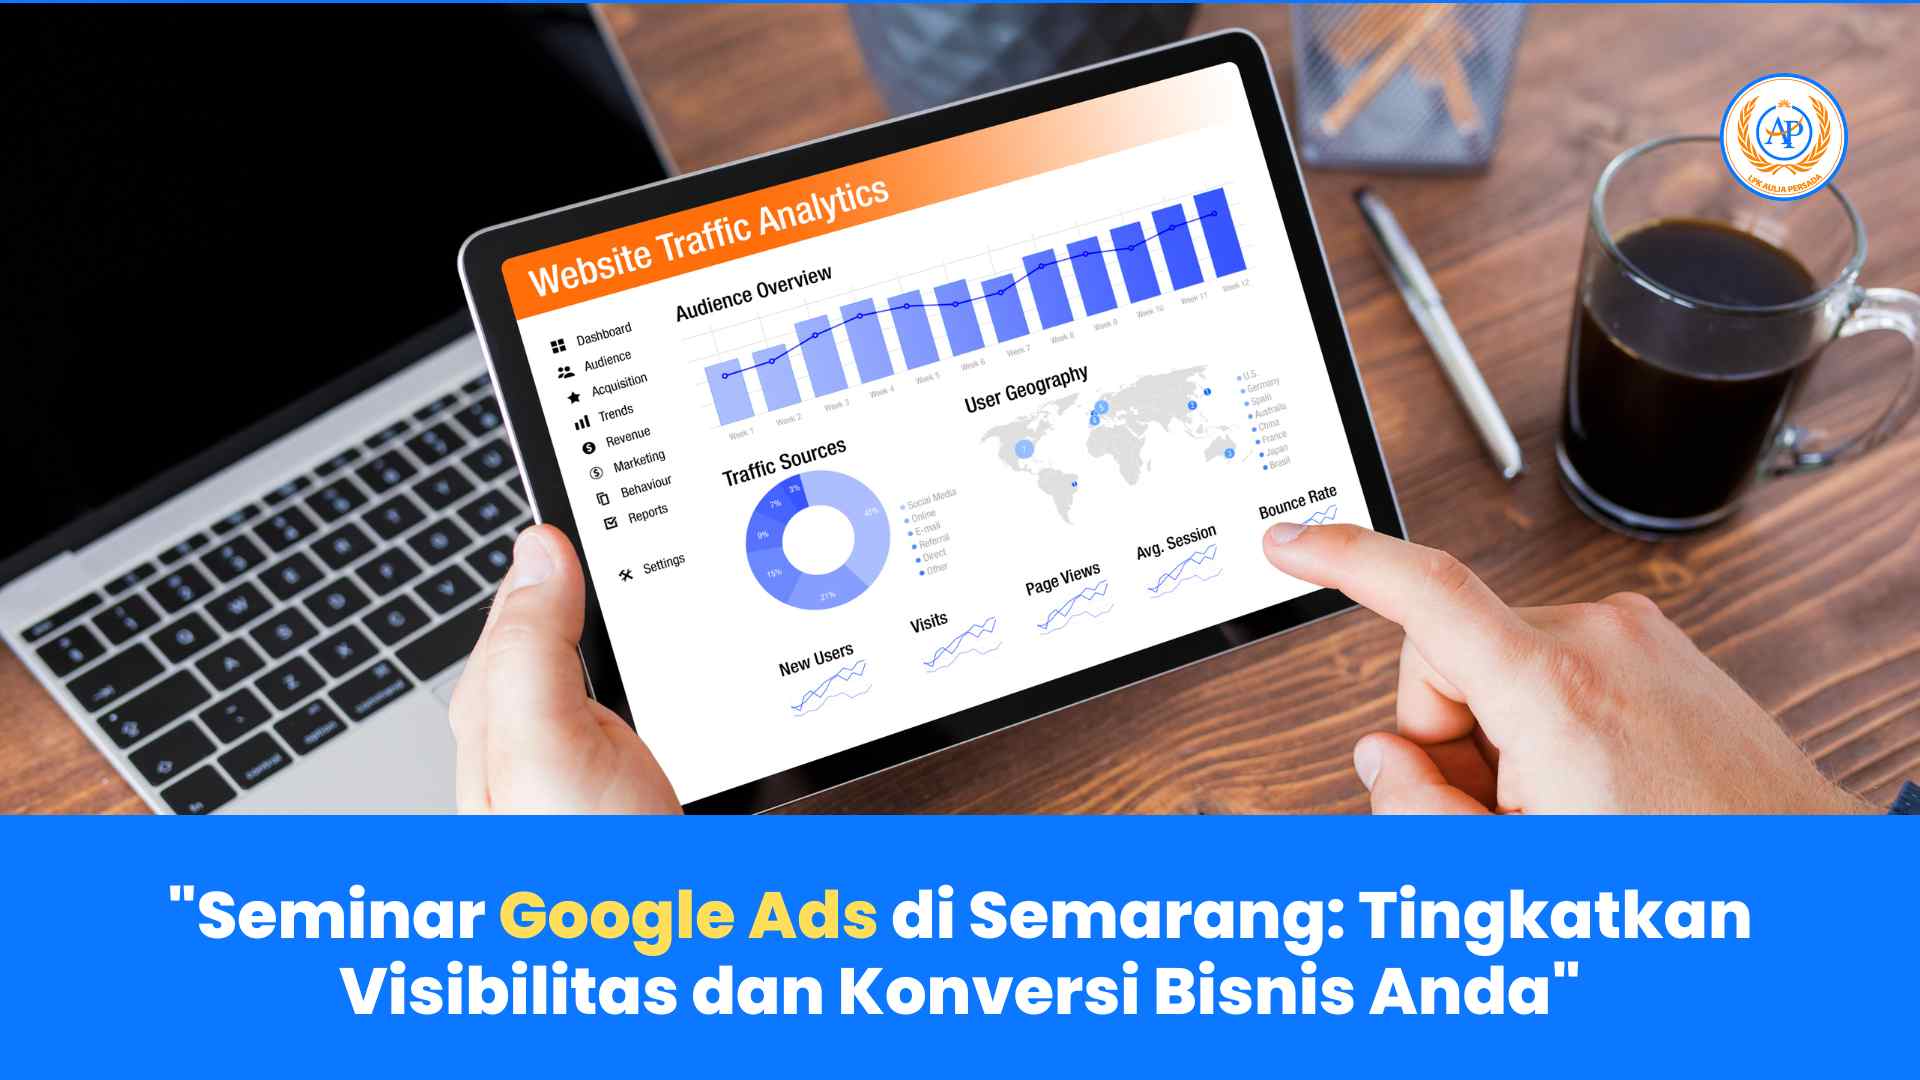 Seminar Google Ads di Semarang: Tingkatkan Visibilitas dan Konversi Bisnis Anda bersama Aulia Persada